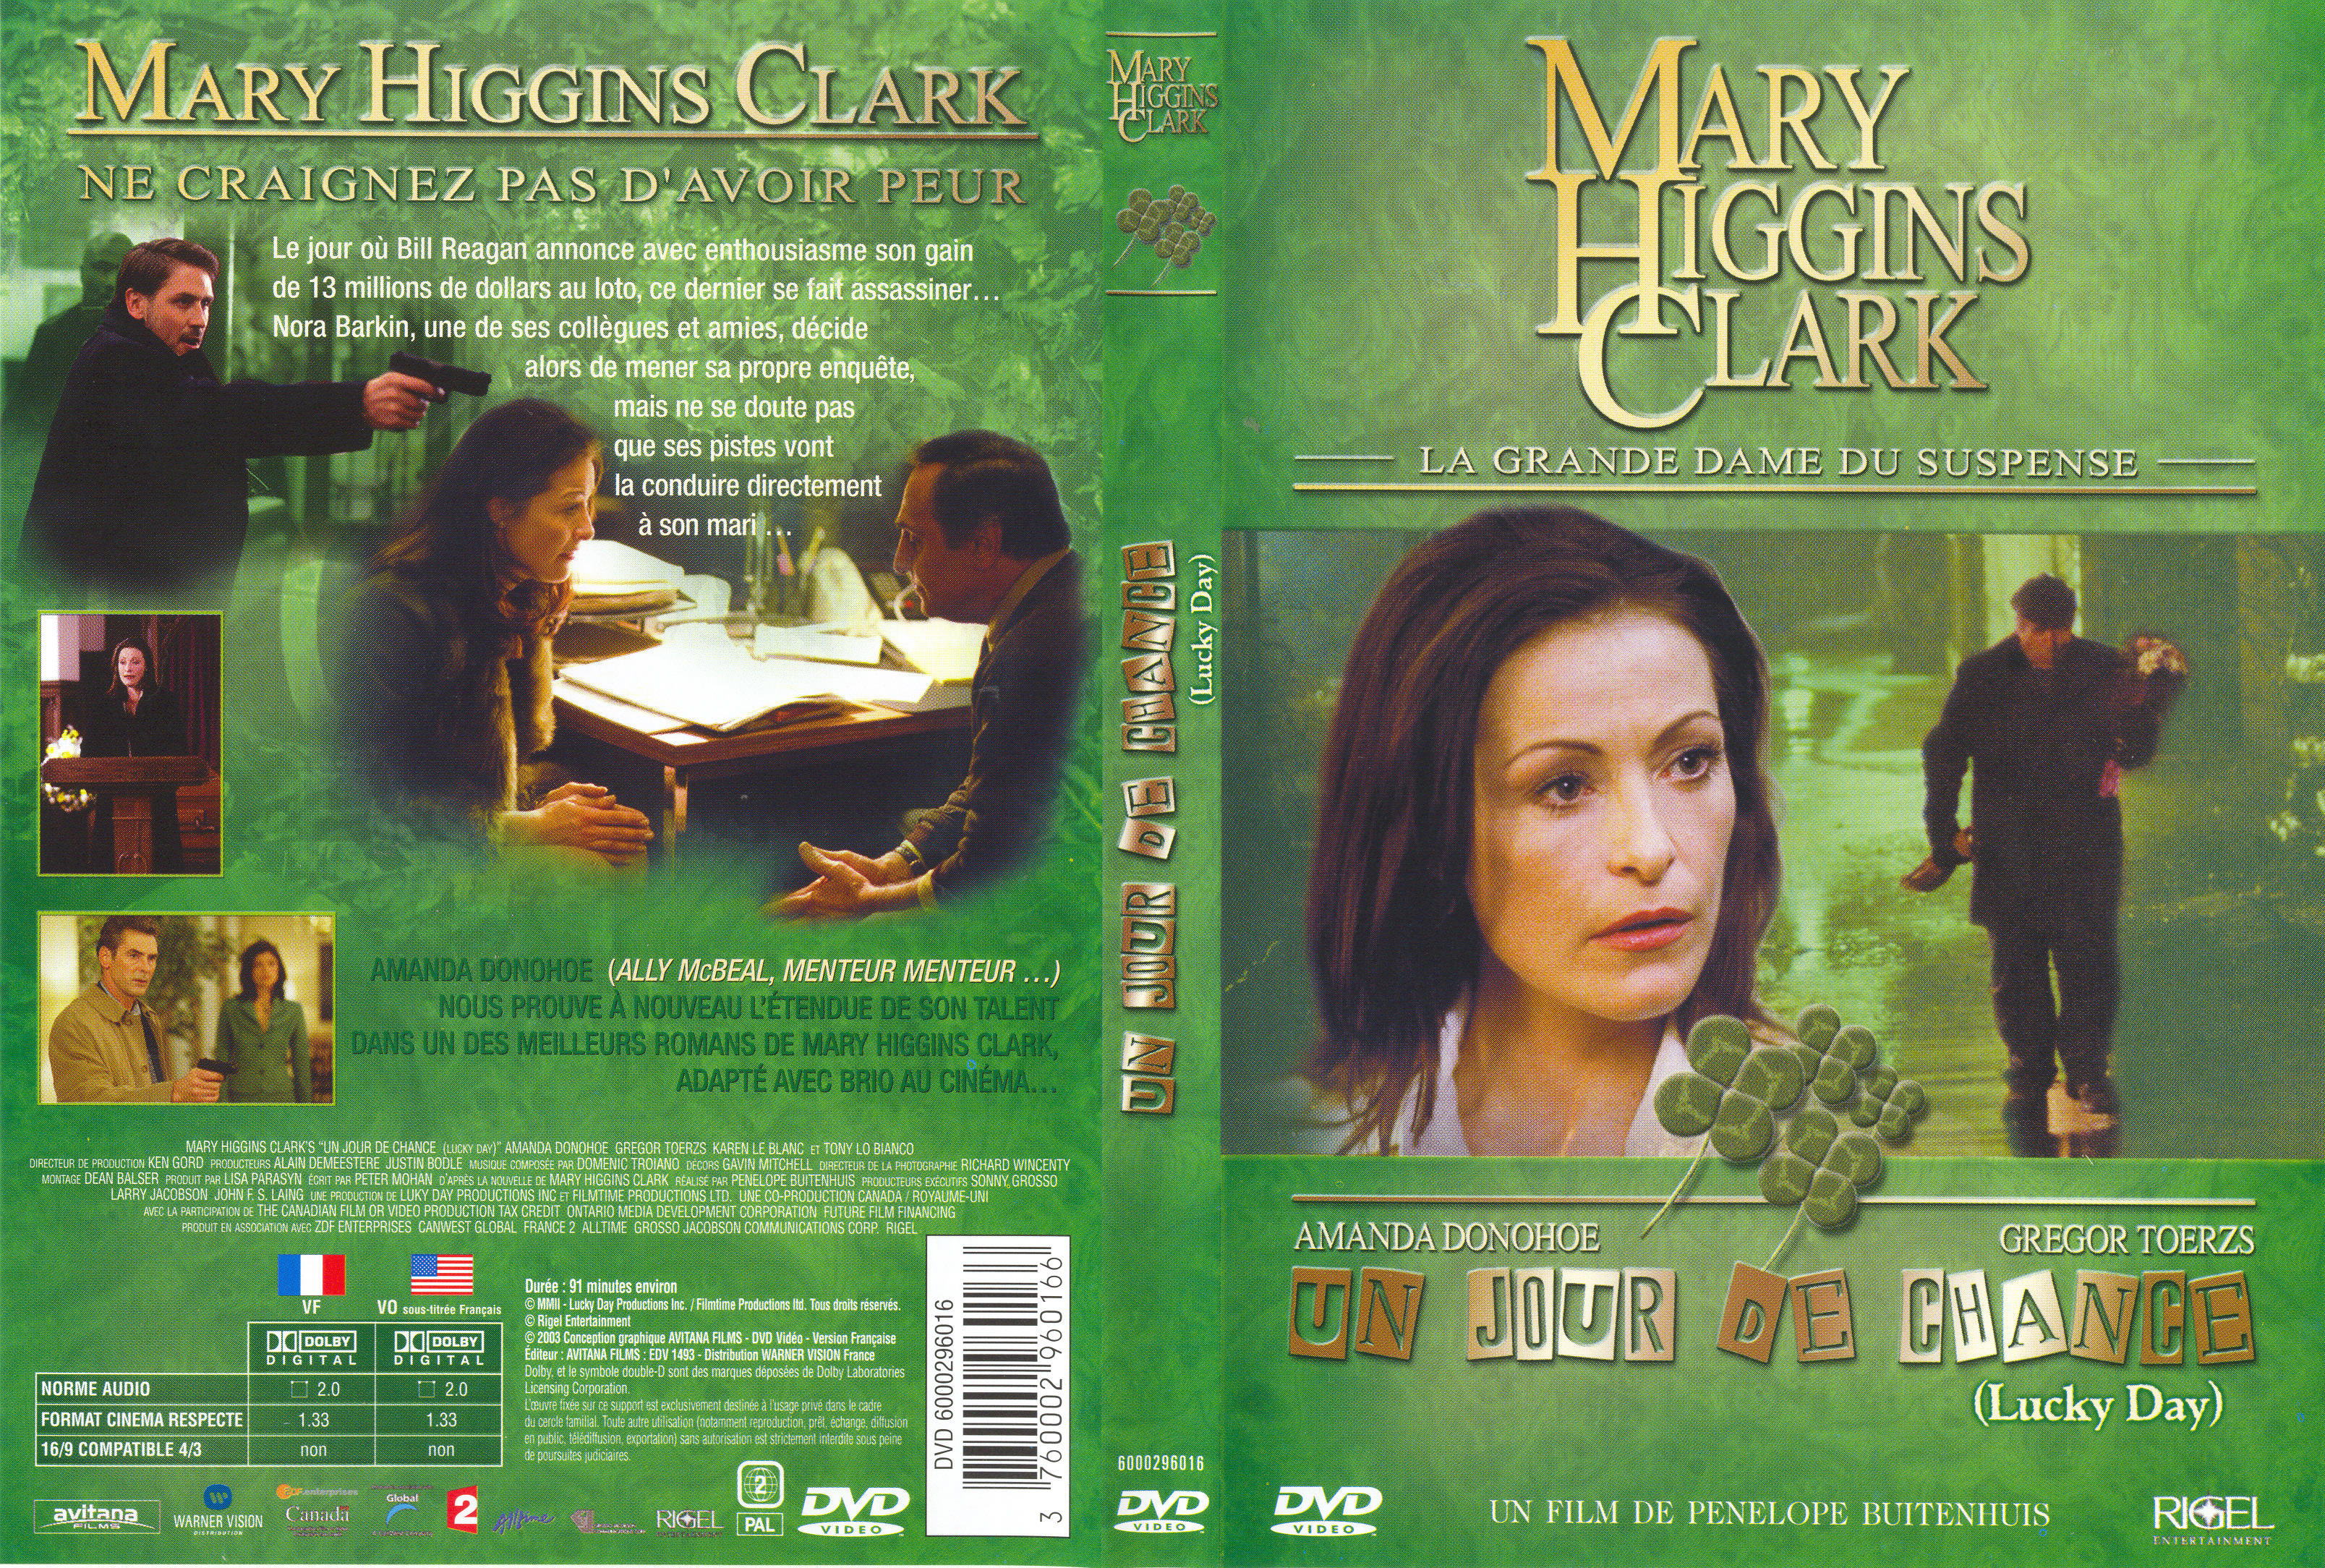 Jaquette DVD de Mary Higgins Clark - Un jour de chance - Cinéma Passion